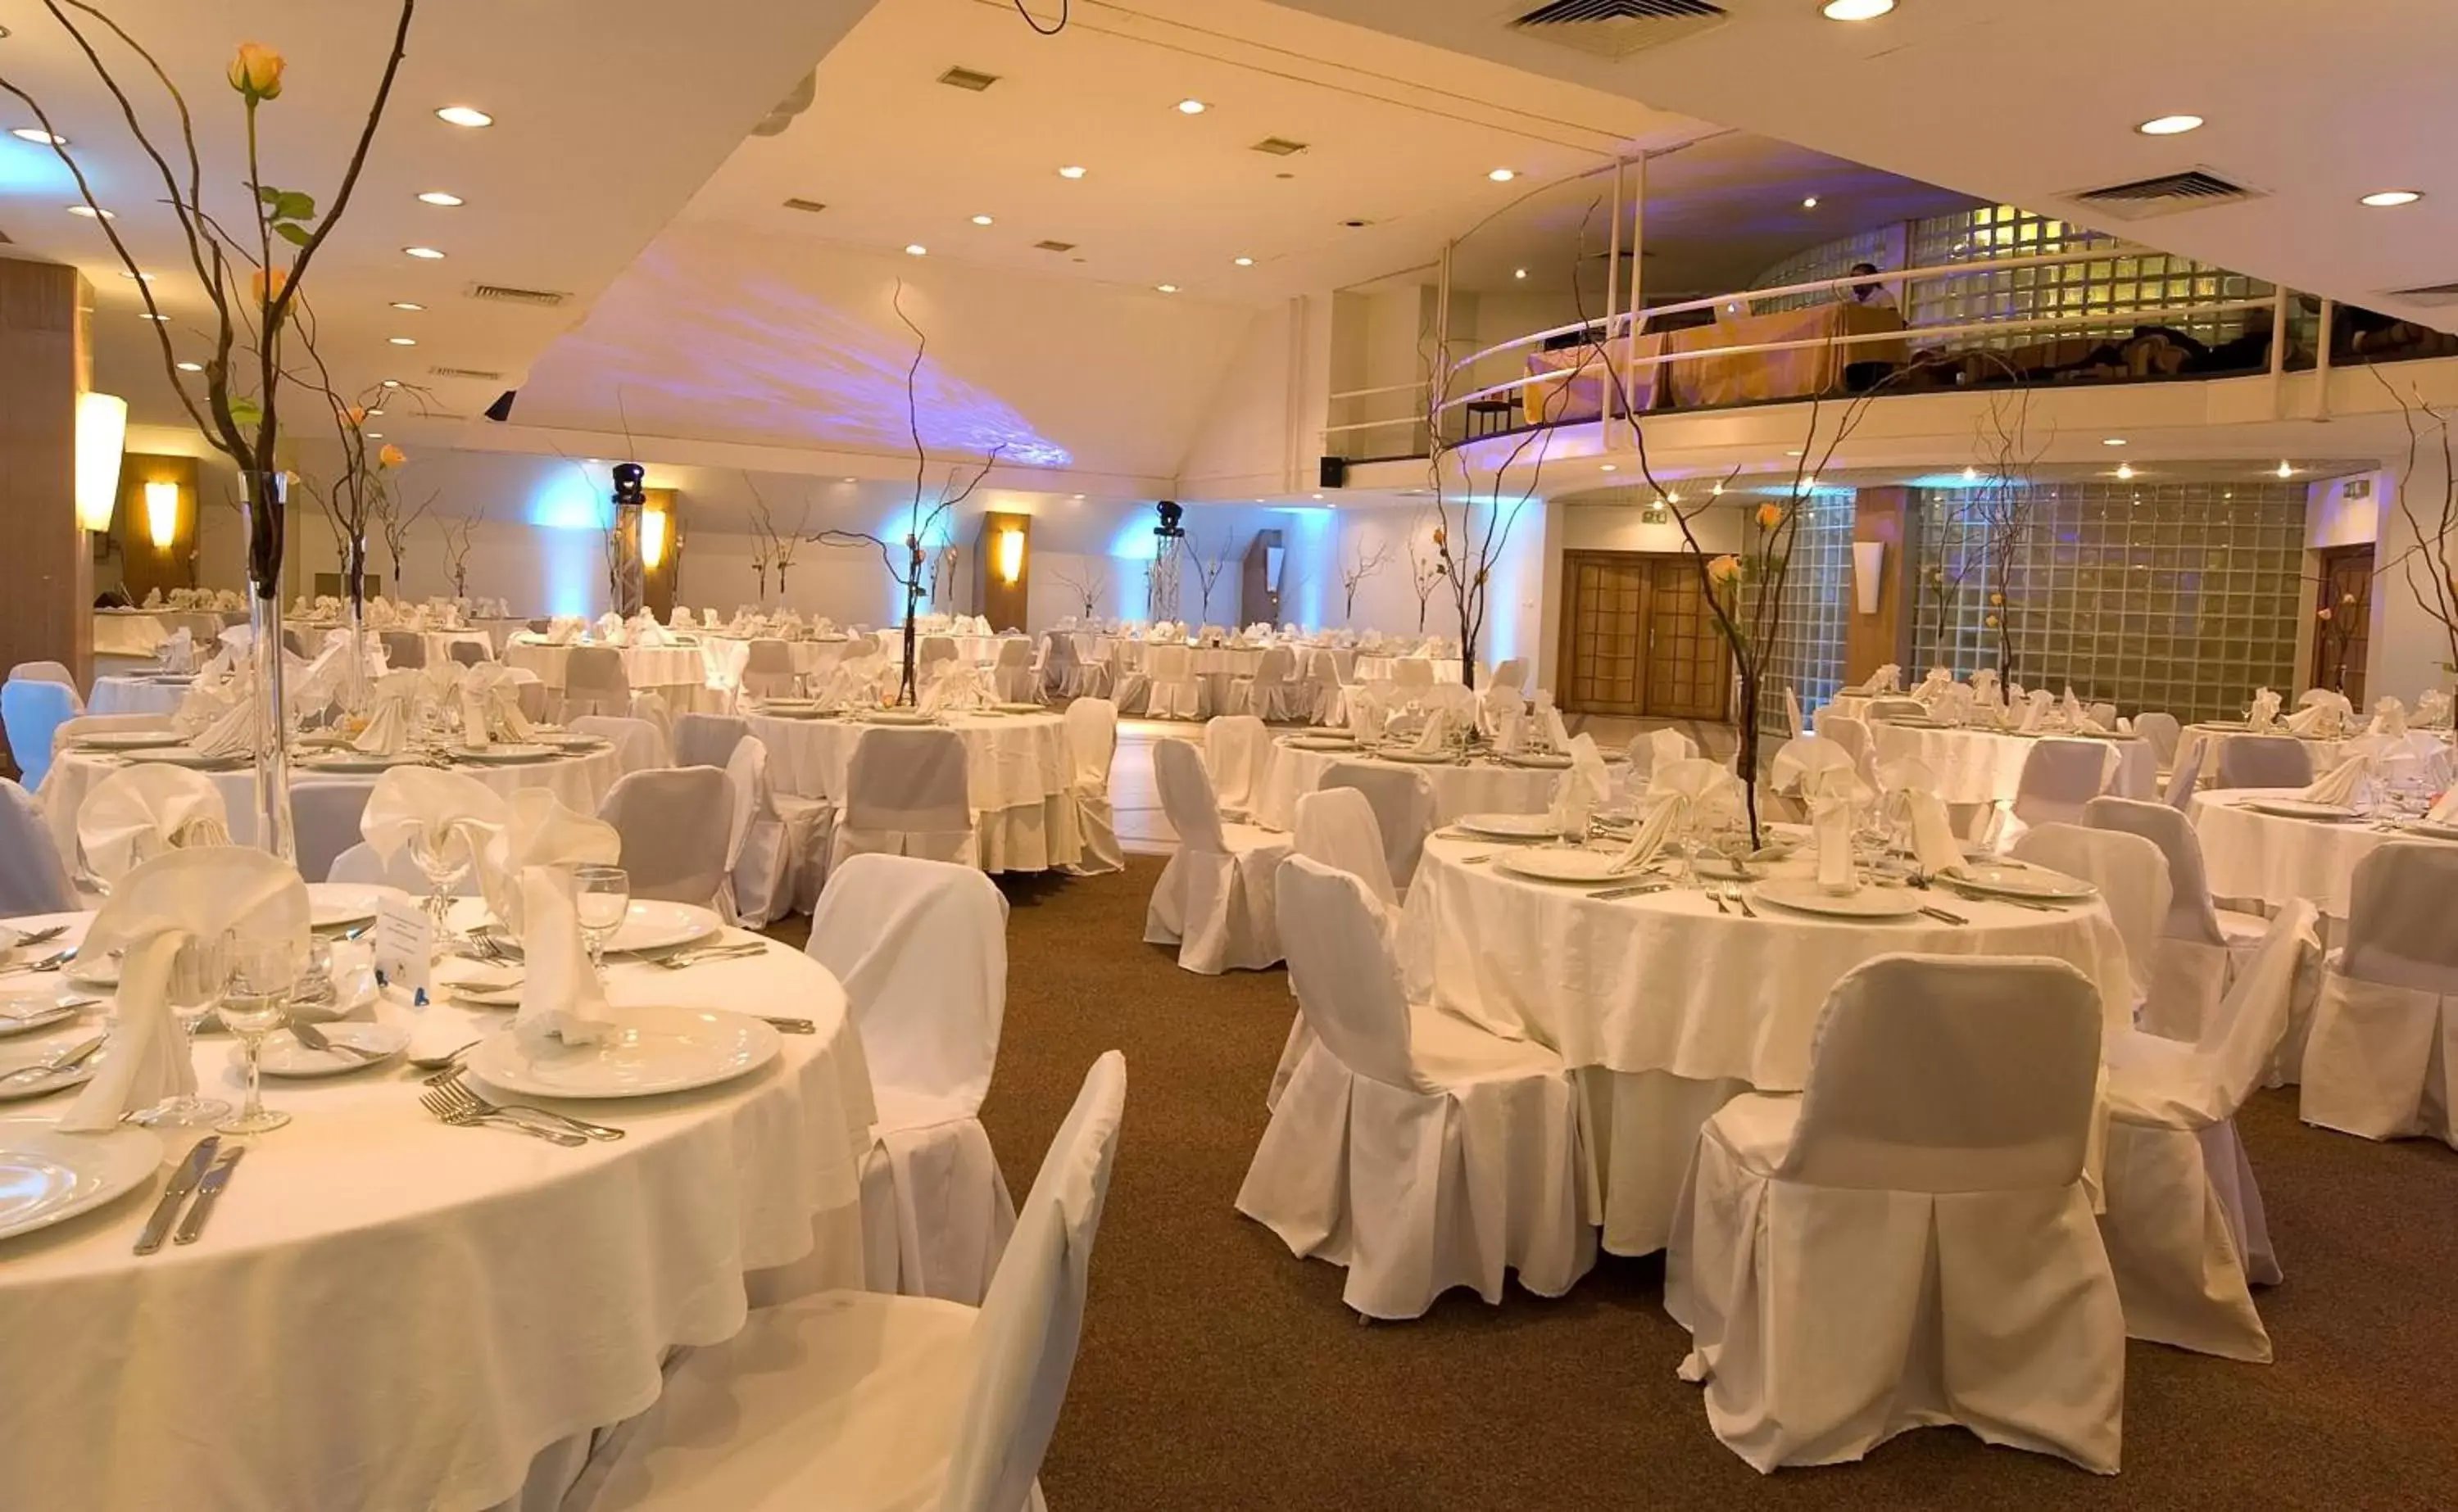 Banquet/Function facilities, Banquet Facilities in Best Western Marina Del Rey